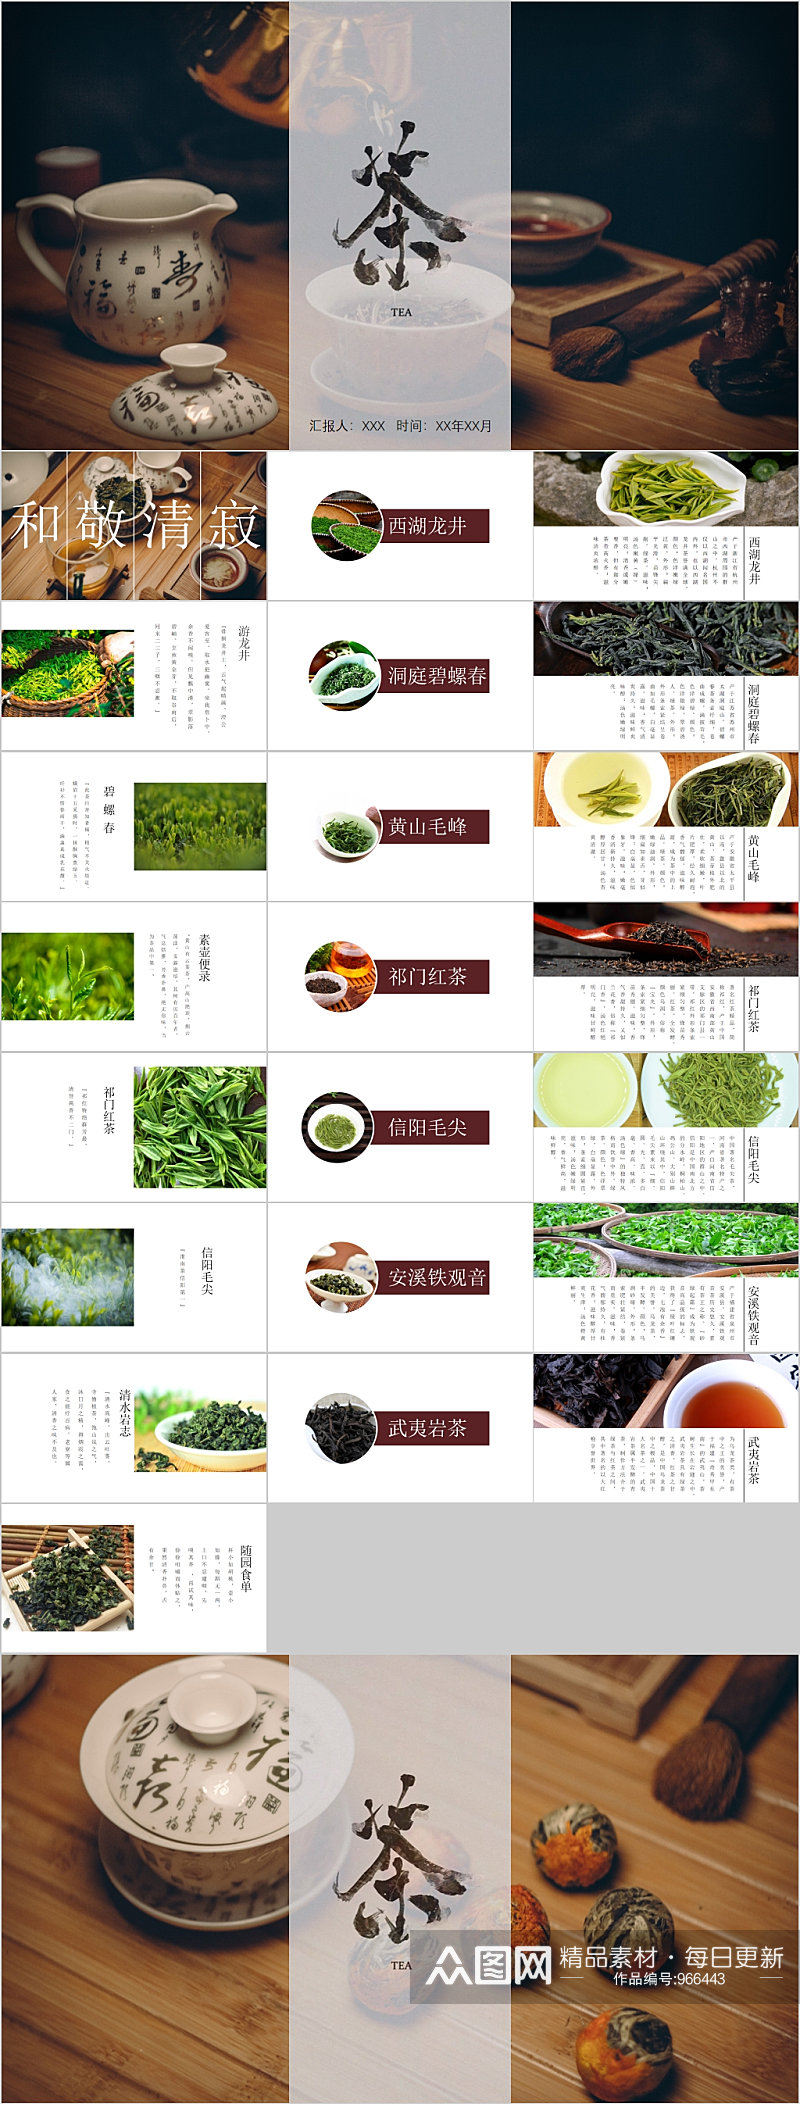 中国茶文化宣传PPT模板素材